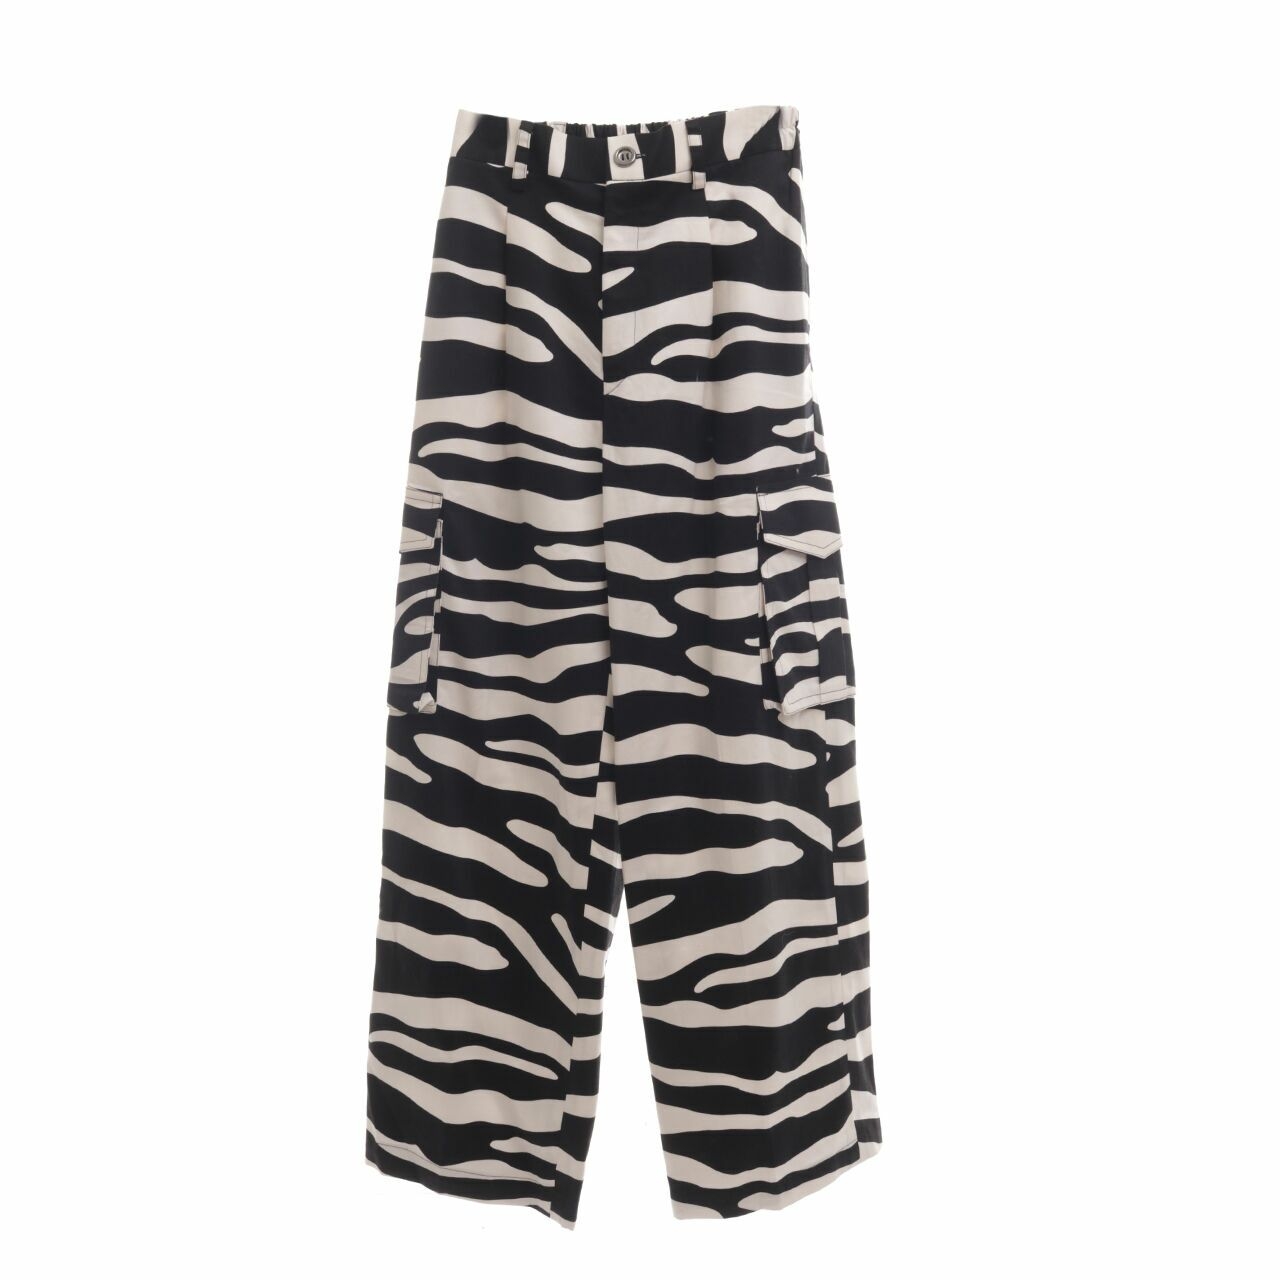 TALE Black & White Zebra Long Pants